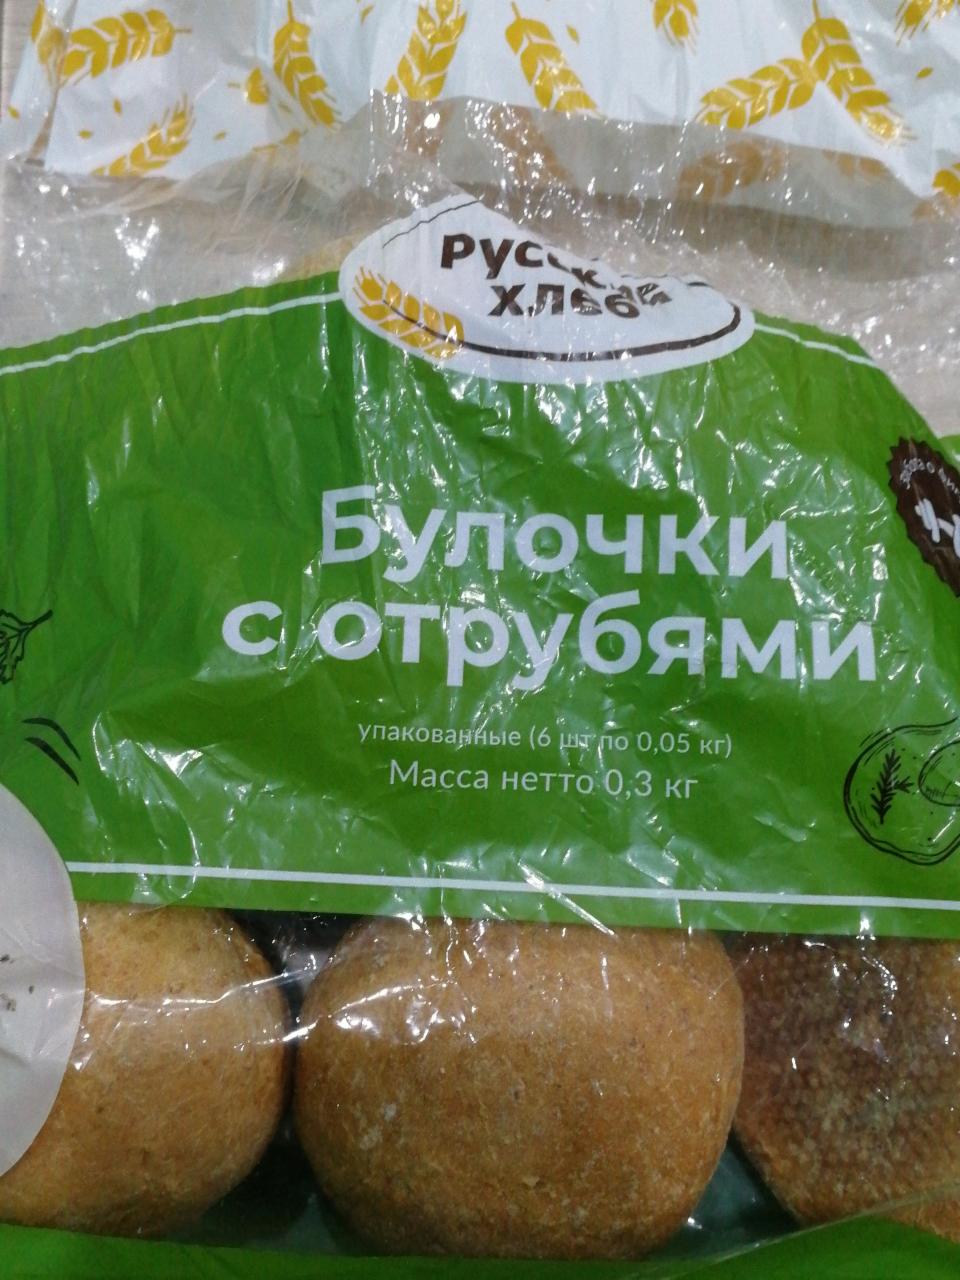 Фото - Булочки с отрубями Русский хлеб